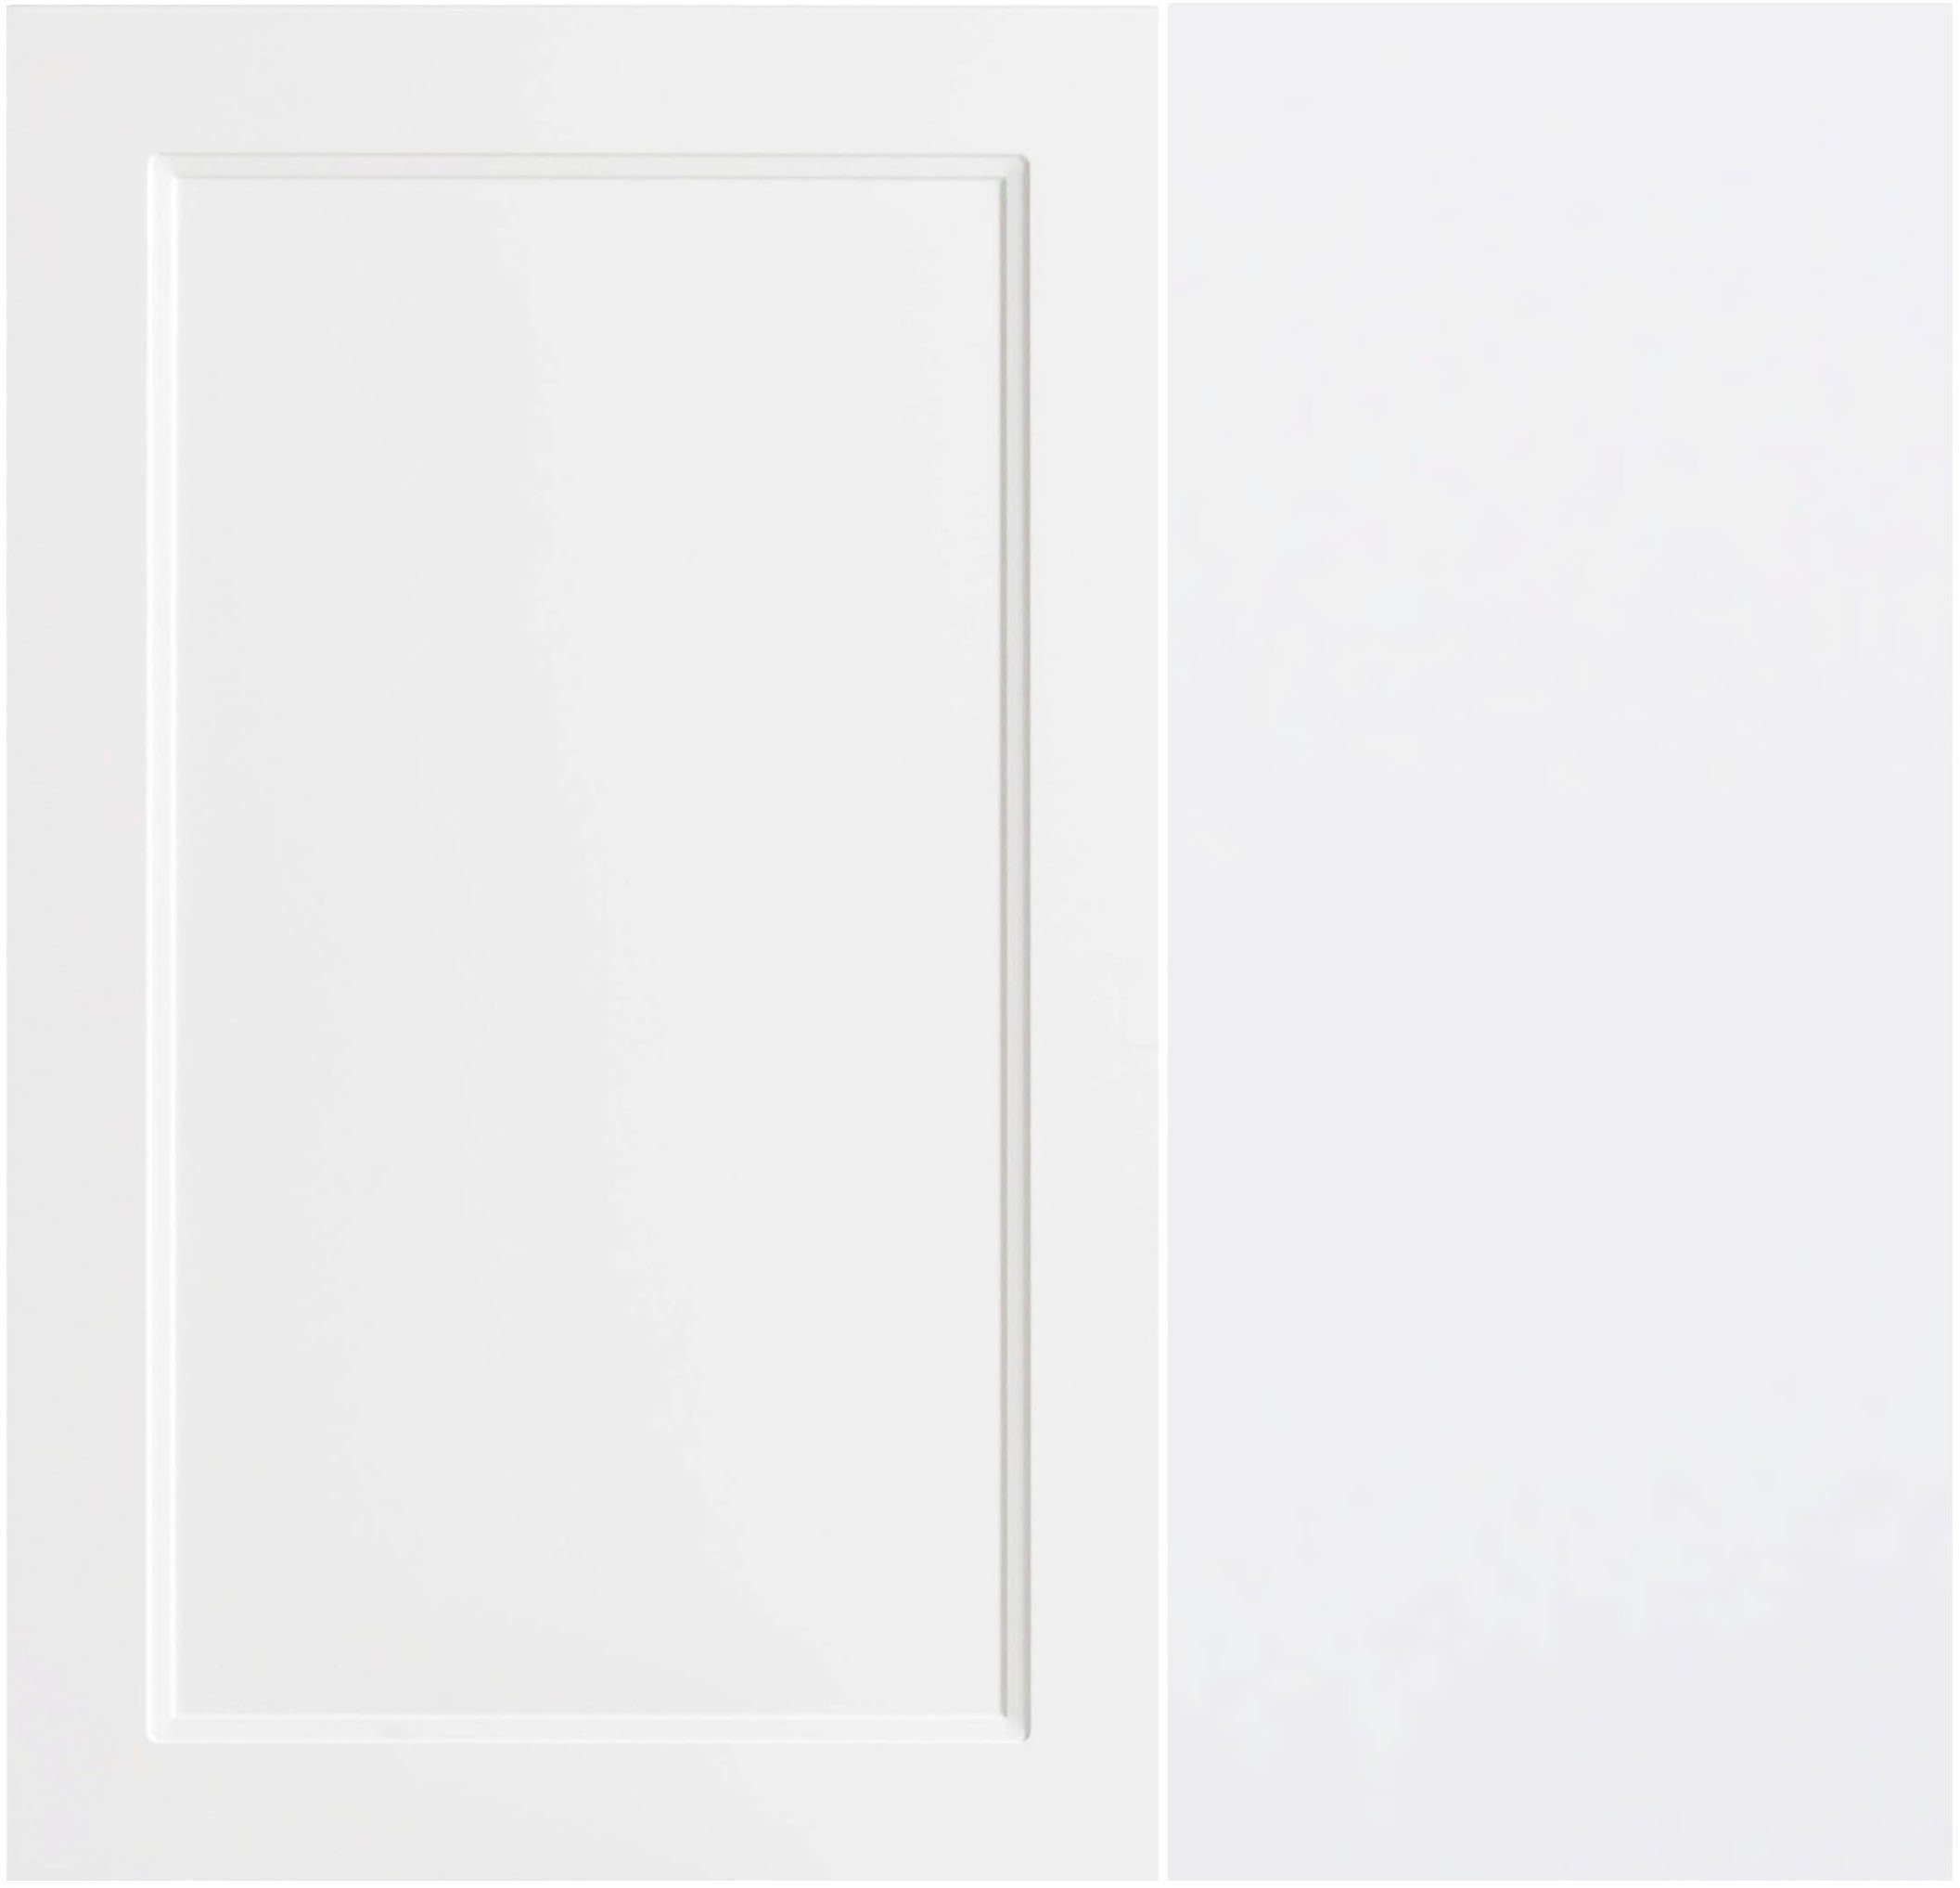 HELD MÖBEL Waschbeckenunterschrank Lana Badmöbel, 2 60 cm breit | weiß Schubladen, Matt weiß